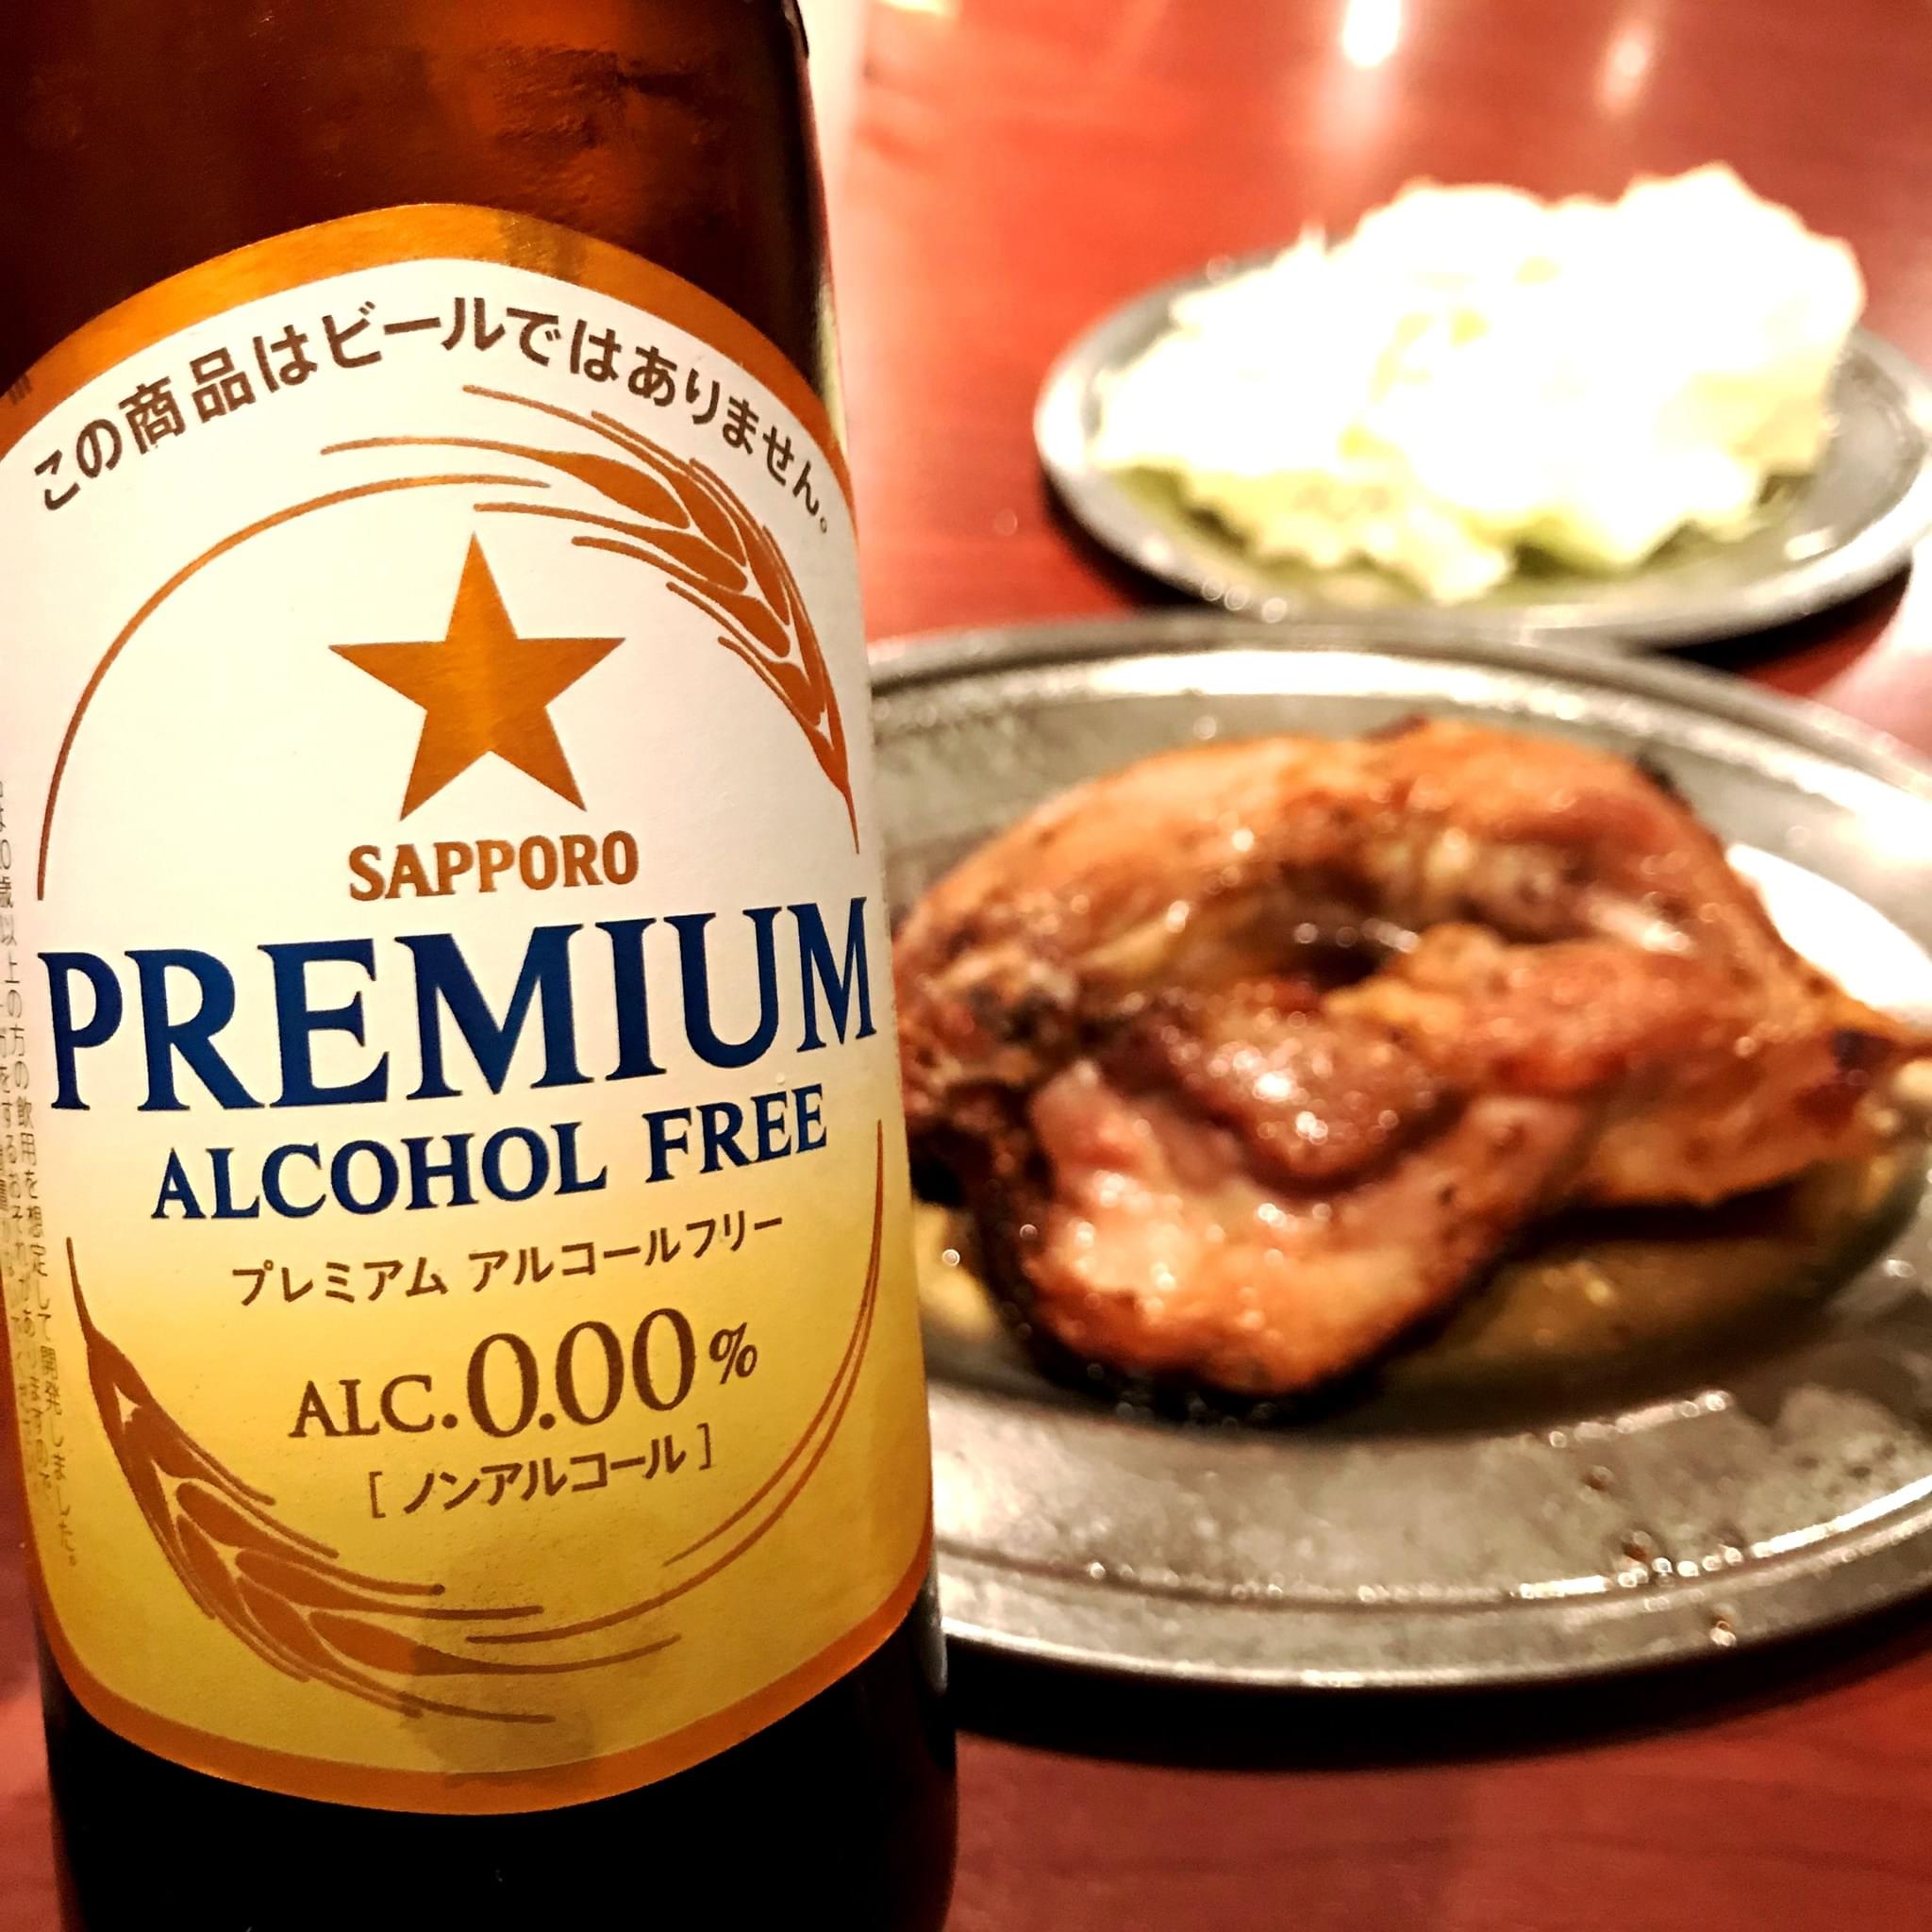 サッポロビール Sapporobeer 週末に飲み過ぎてしまったので 今日は 休肝日 プレミアムアルコールフリー もお肉との相性抜群です 今週も頑張っていきましょう サッポロプレミアムアルコールフリー 乾杯をもっとおいしく サッポロビール